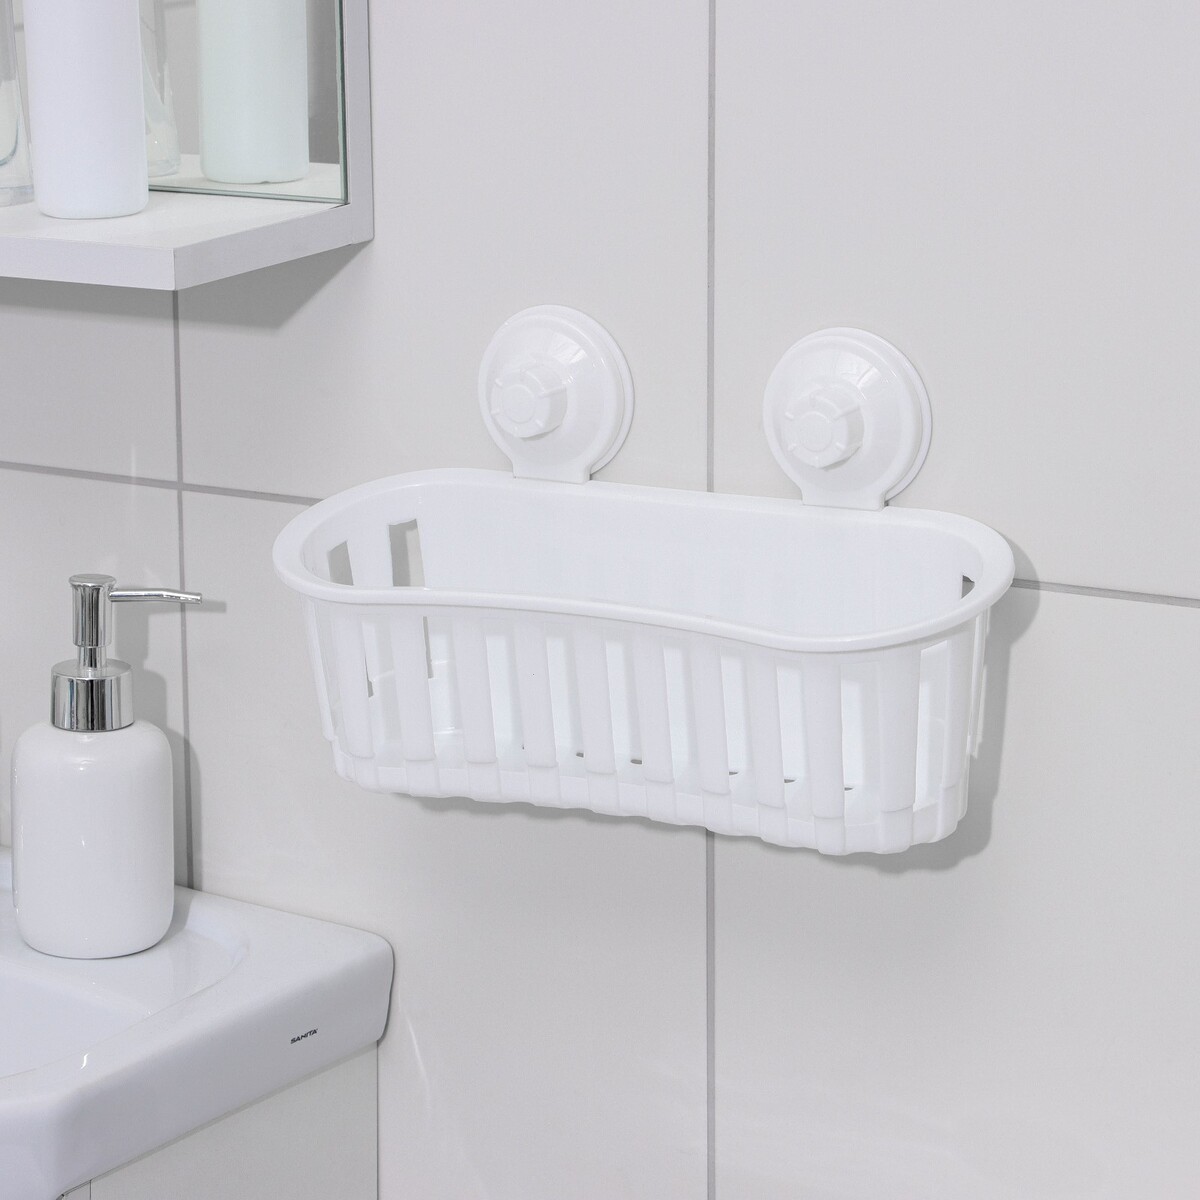 Держатель для ванных принадлежностей на вакуммных присосках, 30×11×9 см, цвет белый держатель для проводов 12 штук белый